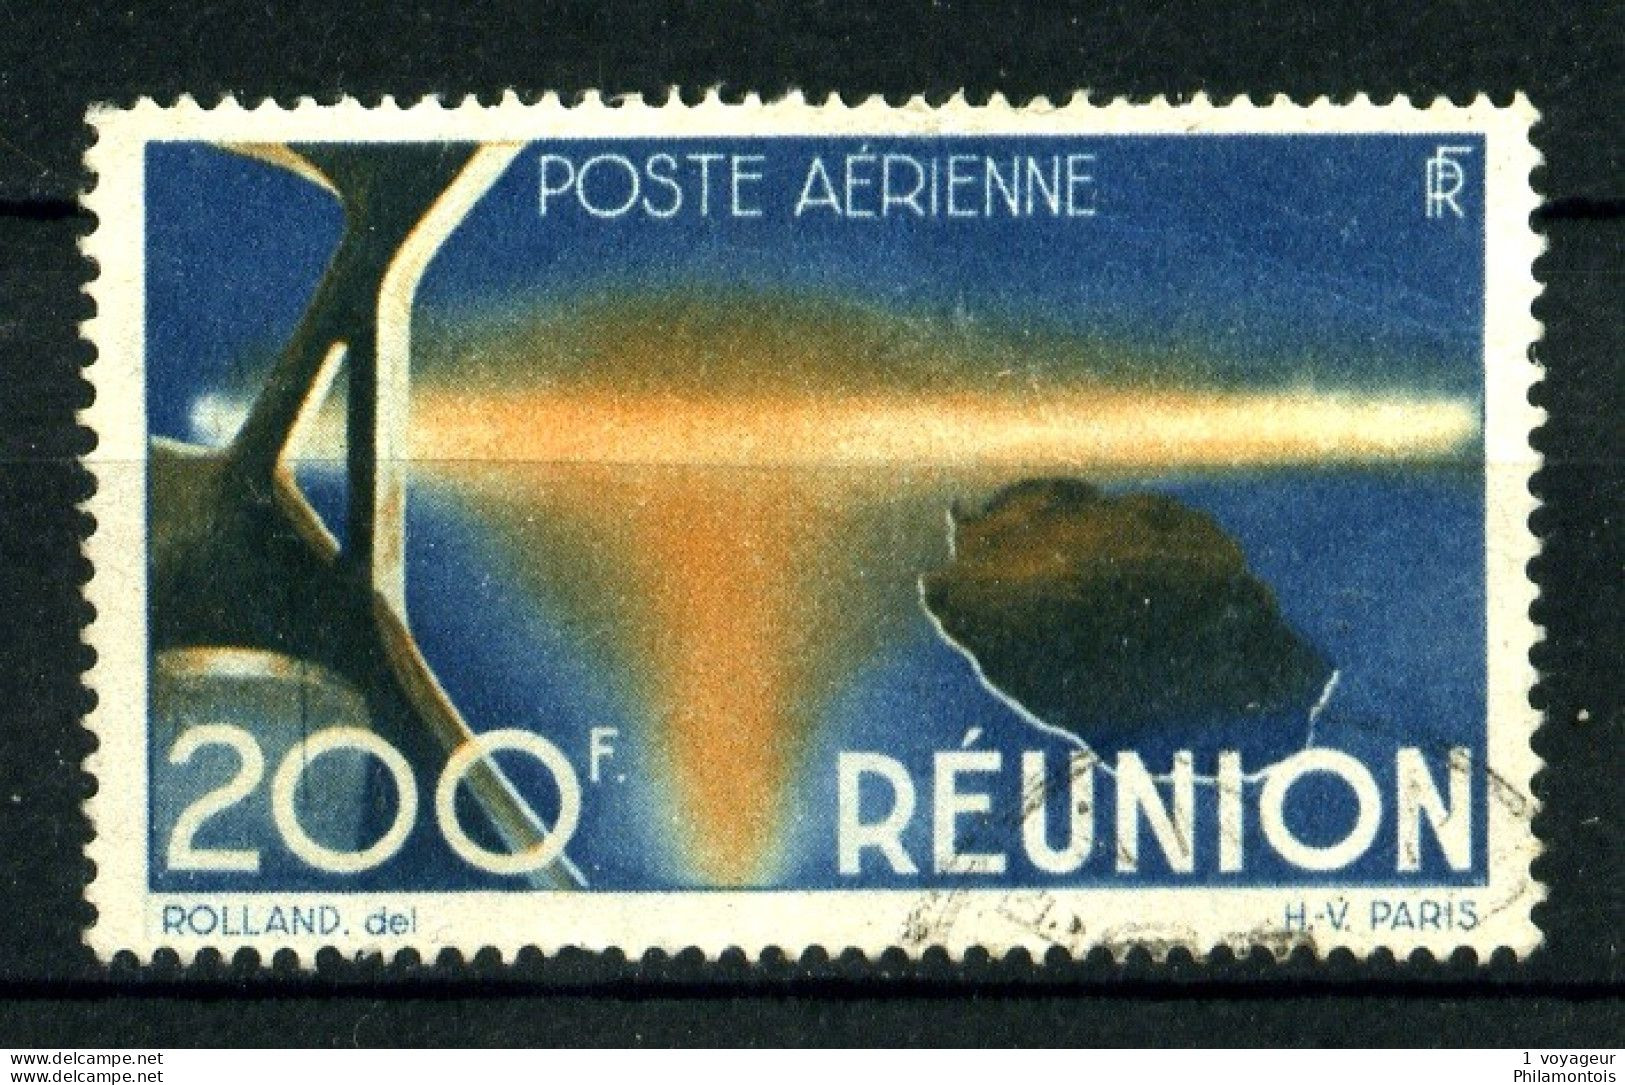 REUNION - PA 44 - 200F Bleu Et Orange - Oblitéré  - Très Beau - Luftpost